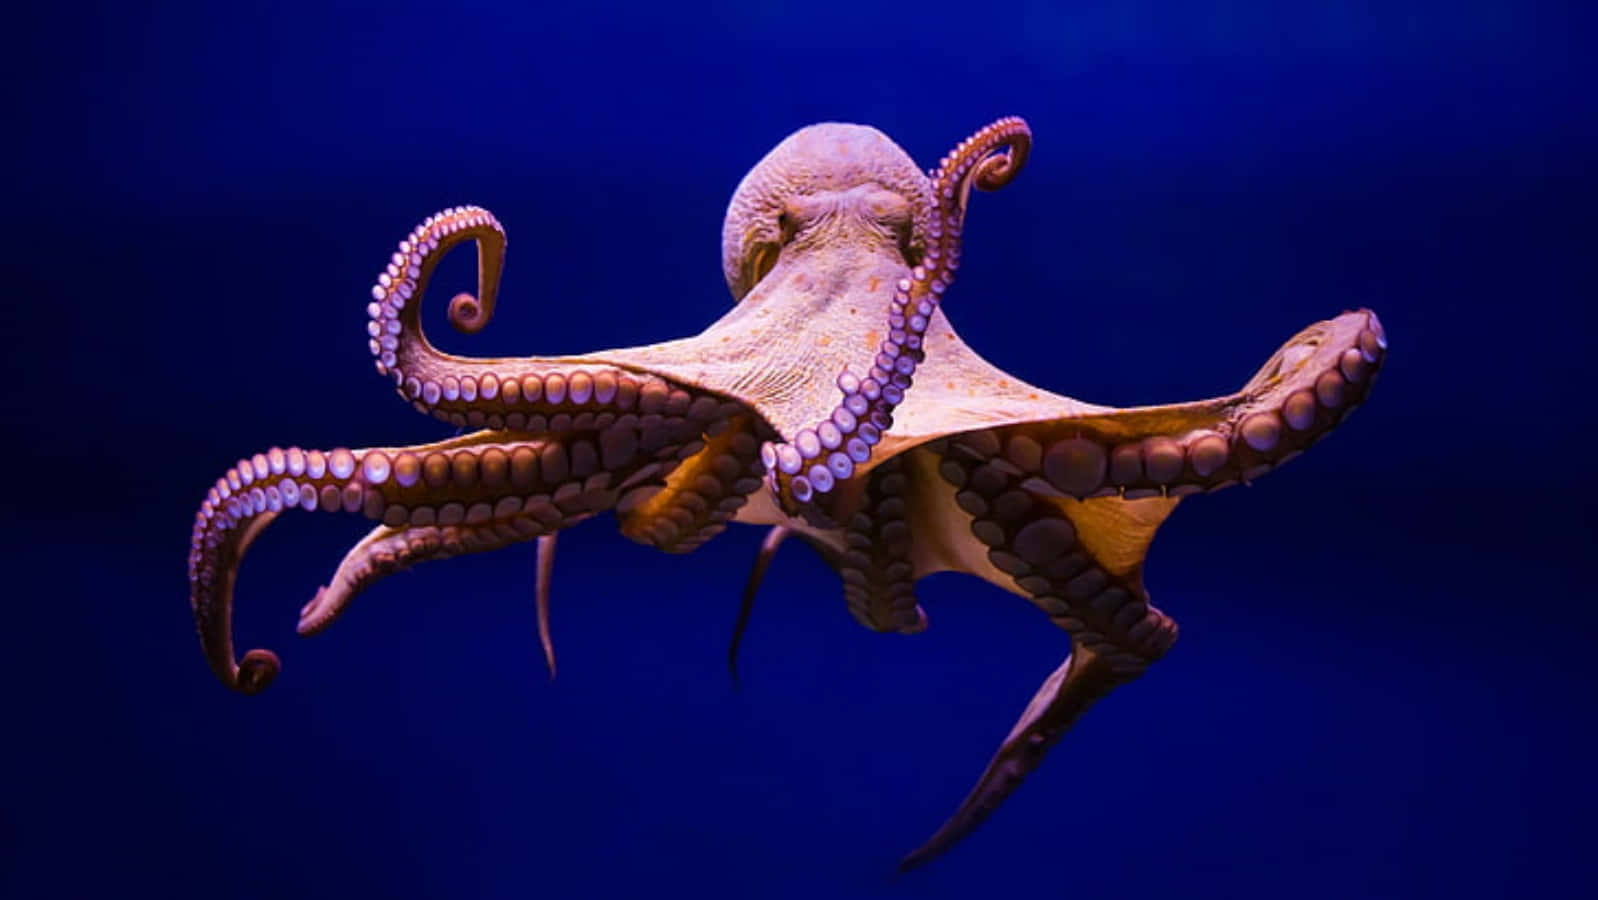 Majestic Octopus Underwater Wallpaper